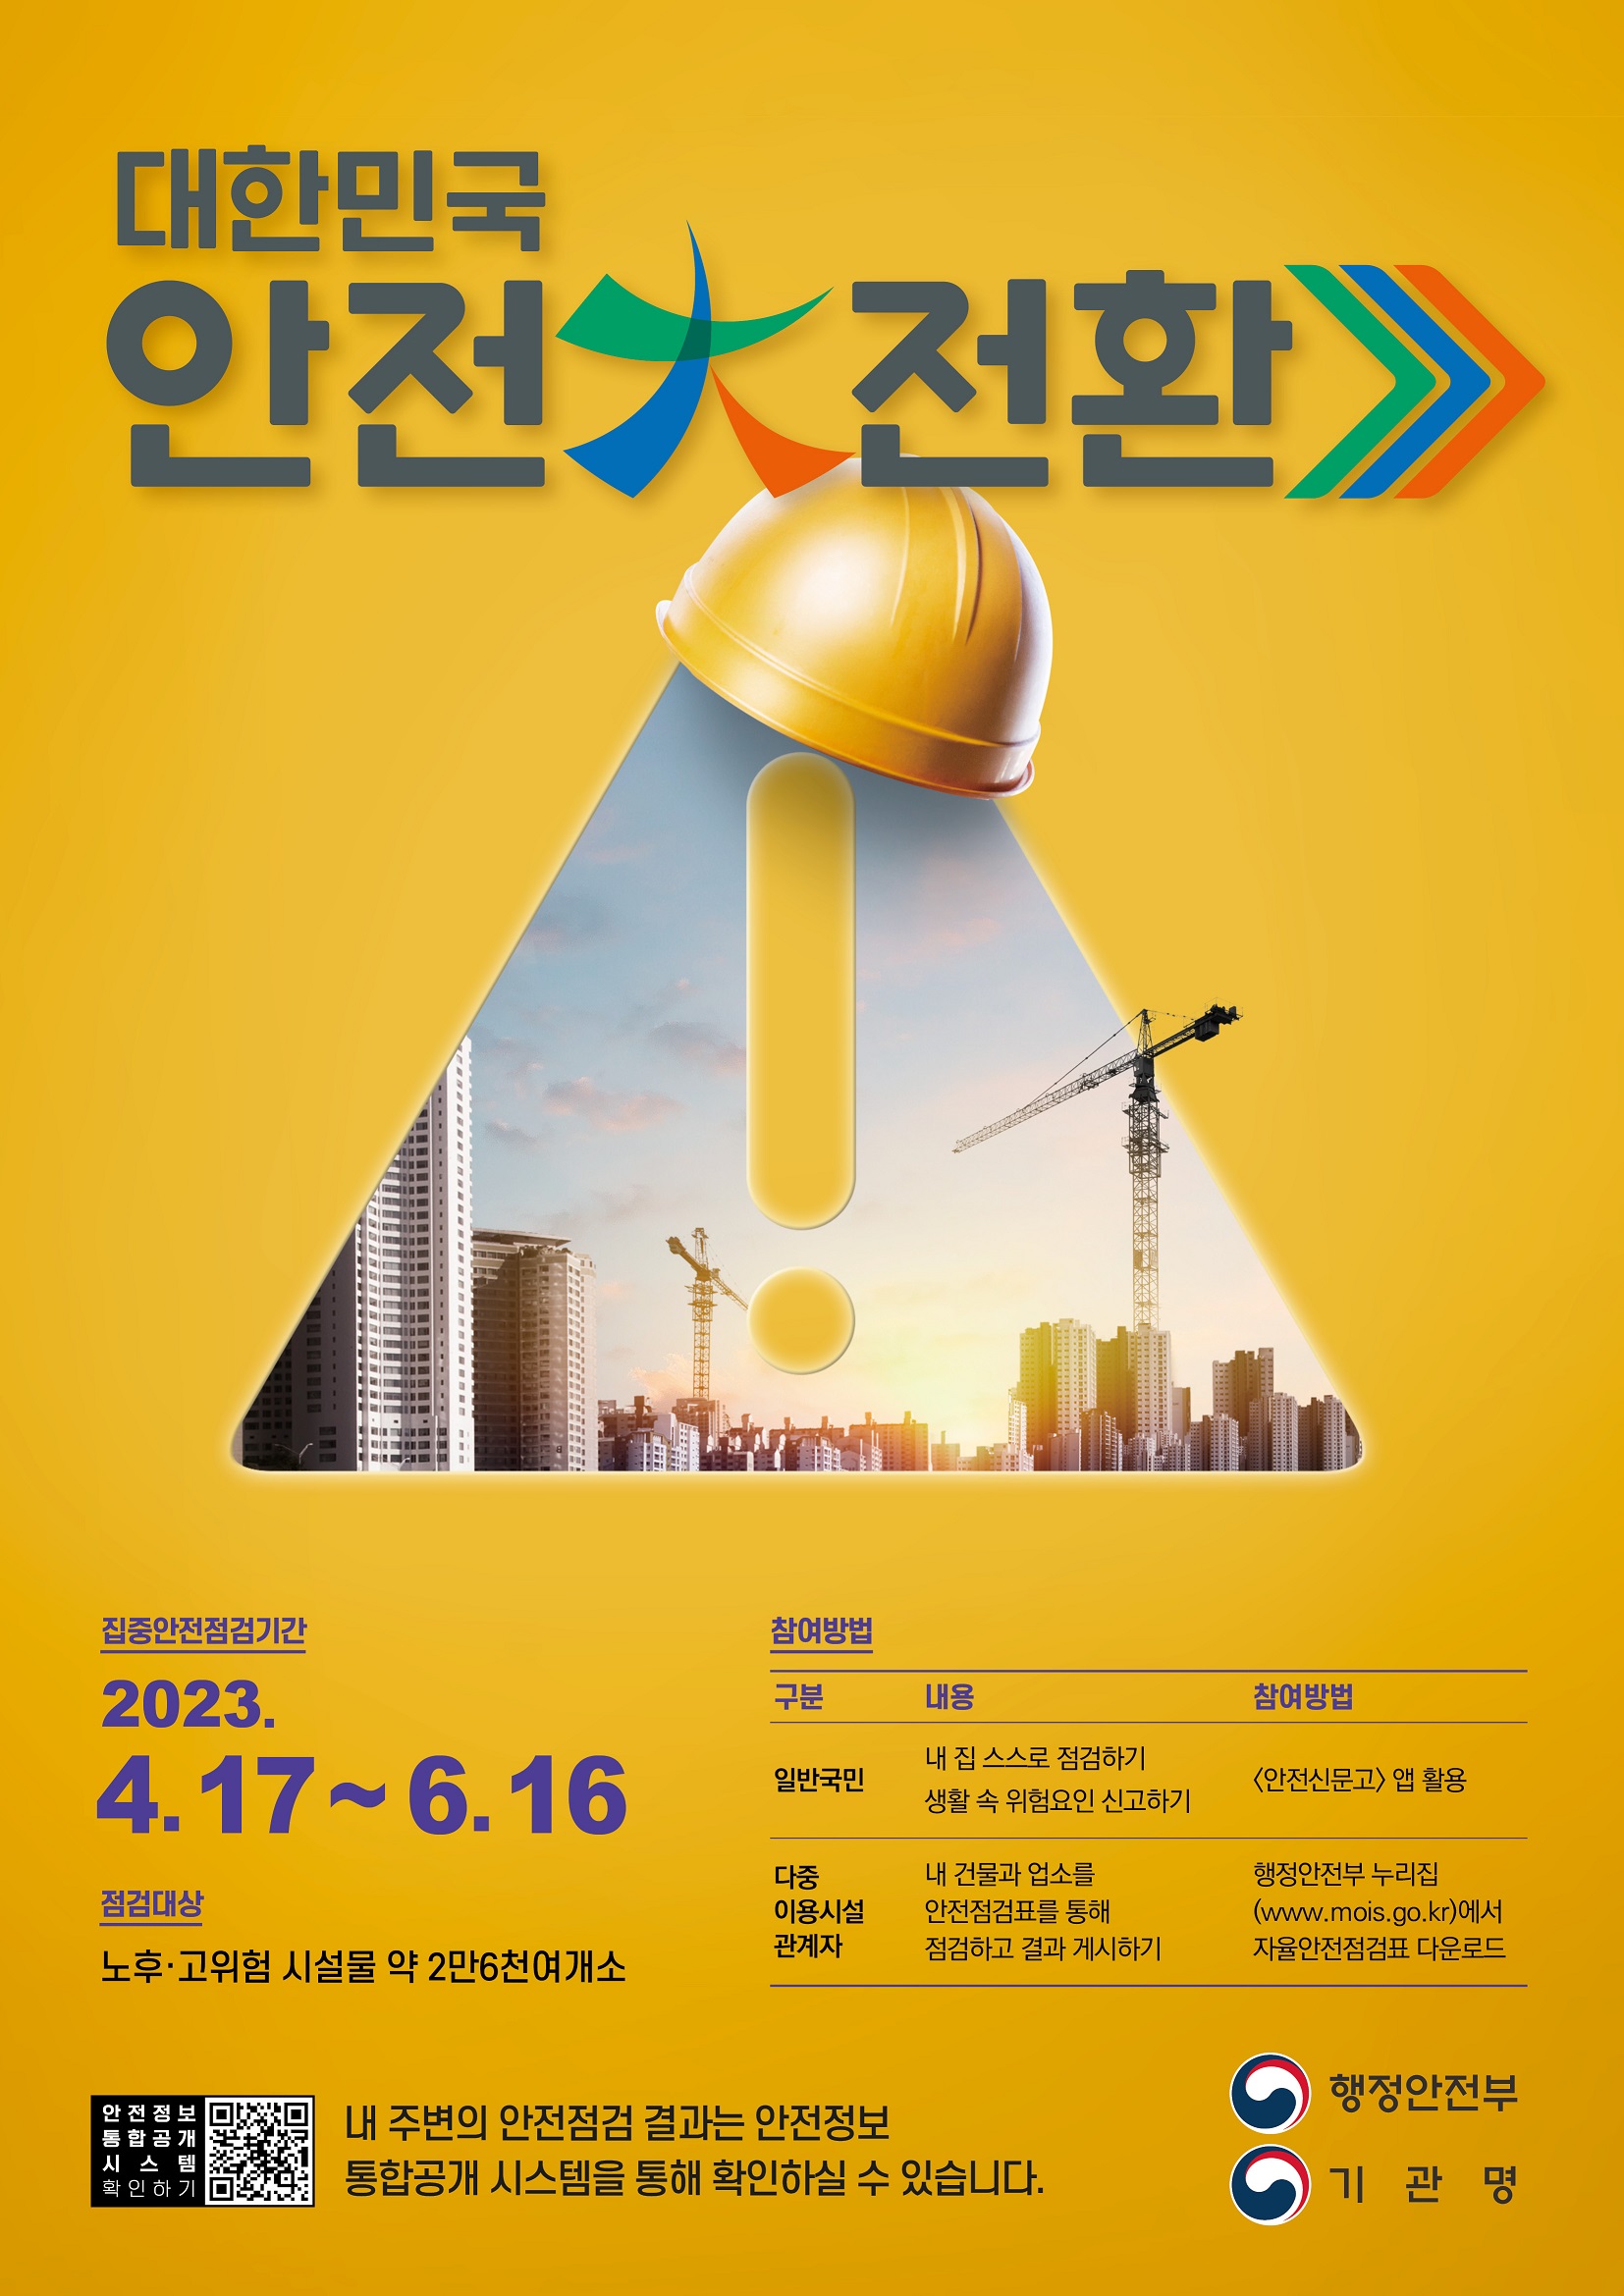 2023년 대한민국 안전大전환-포스터.jpg